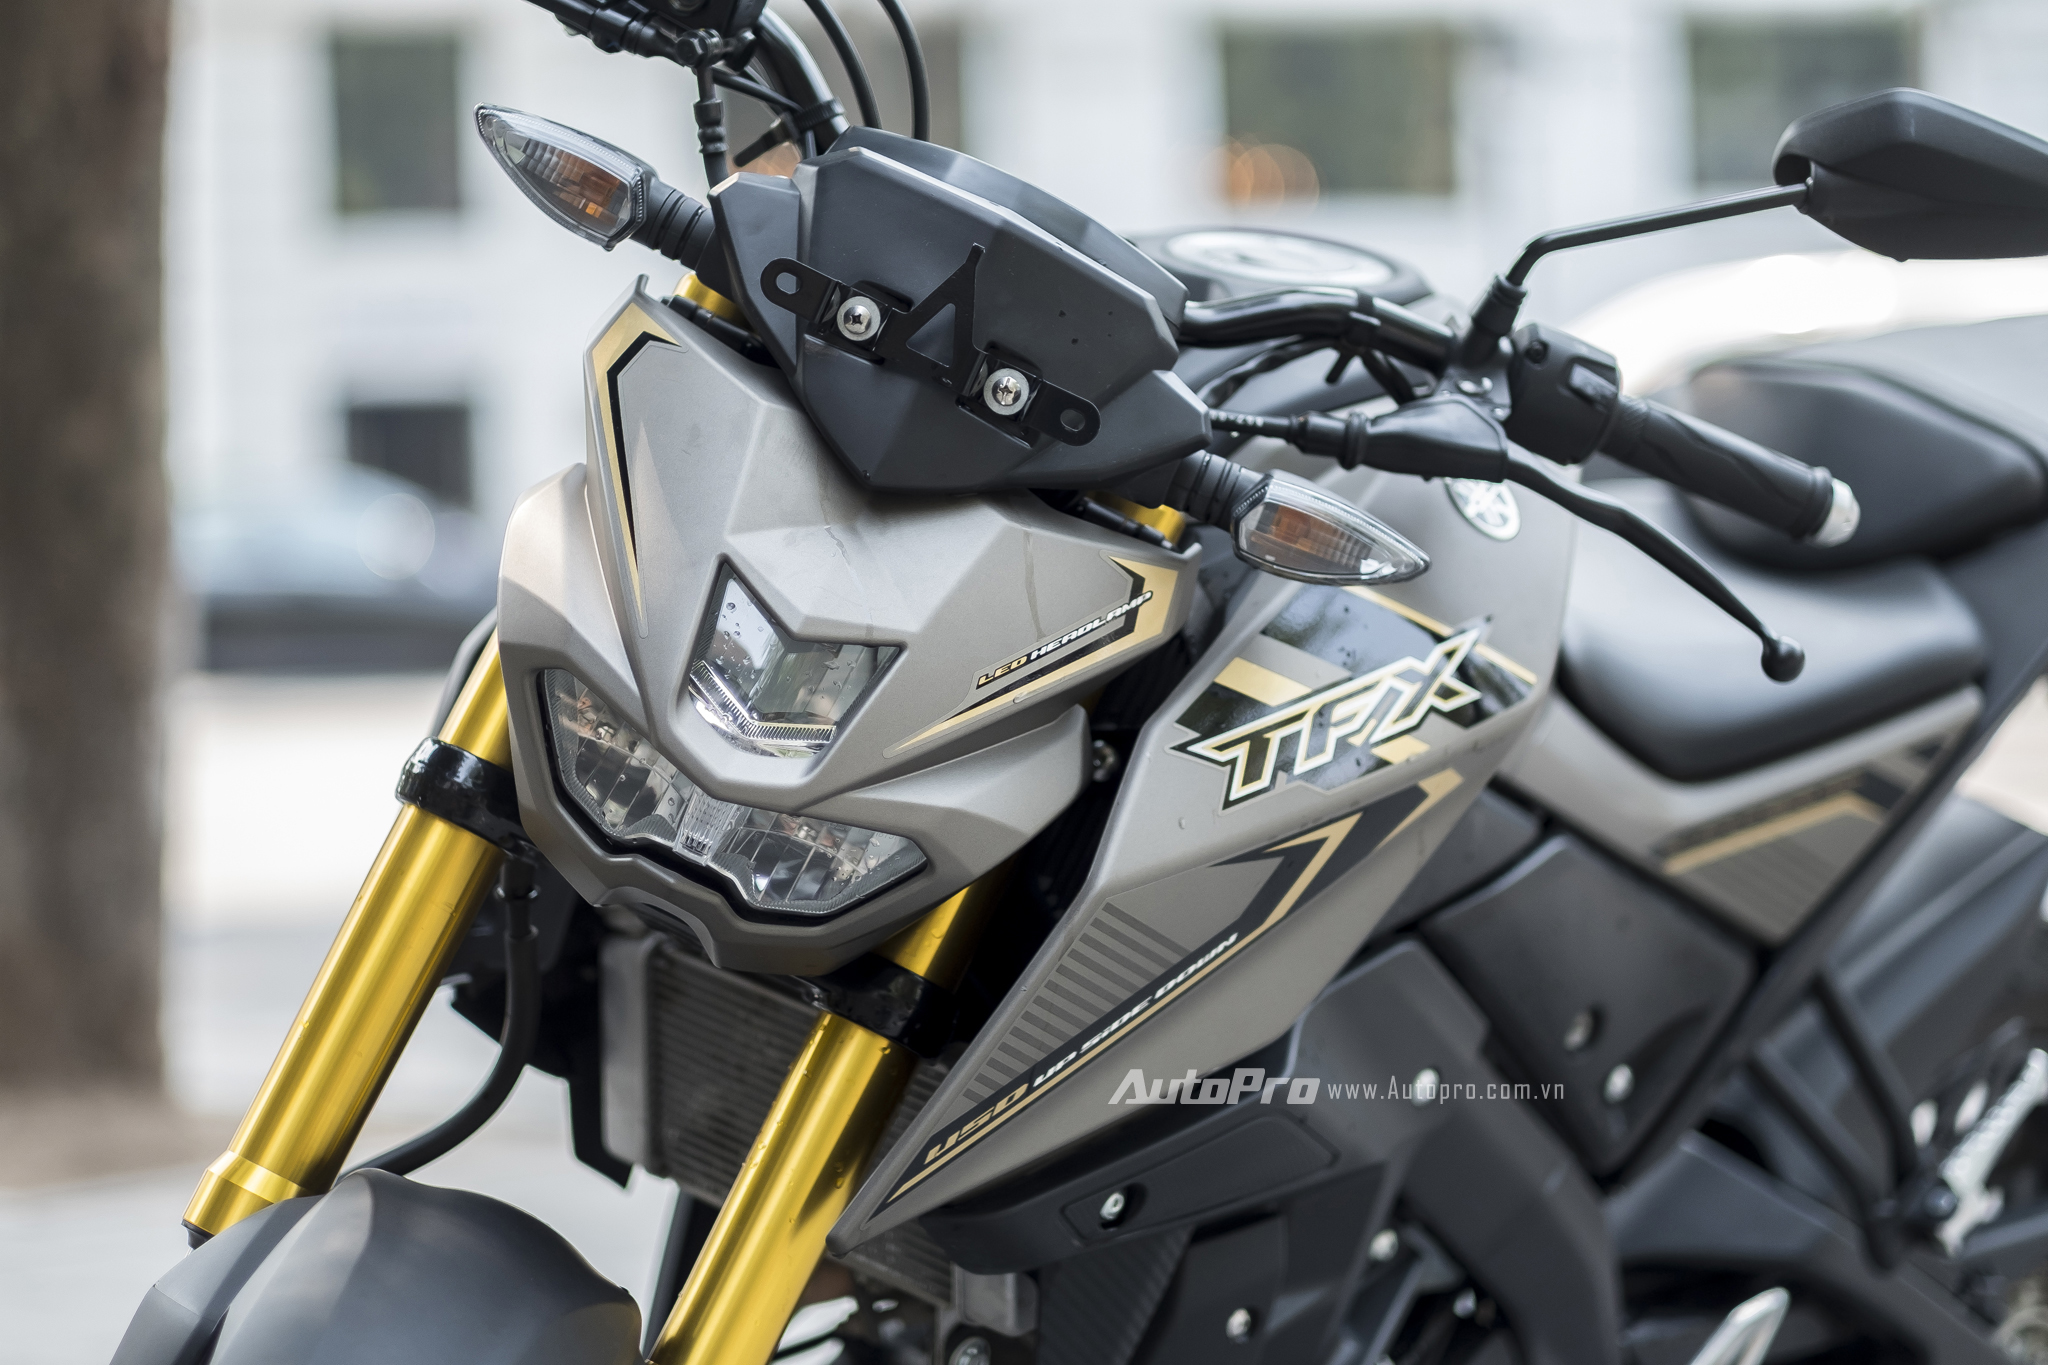 Giá xe Yamaha TFX 150 2020 giá xe mô tô Yamaha TFX 150 2020 mới nhất hôm  nay với đầy đủ thông tin hình ảnh giá cả nhiều dòng xe